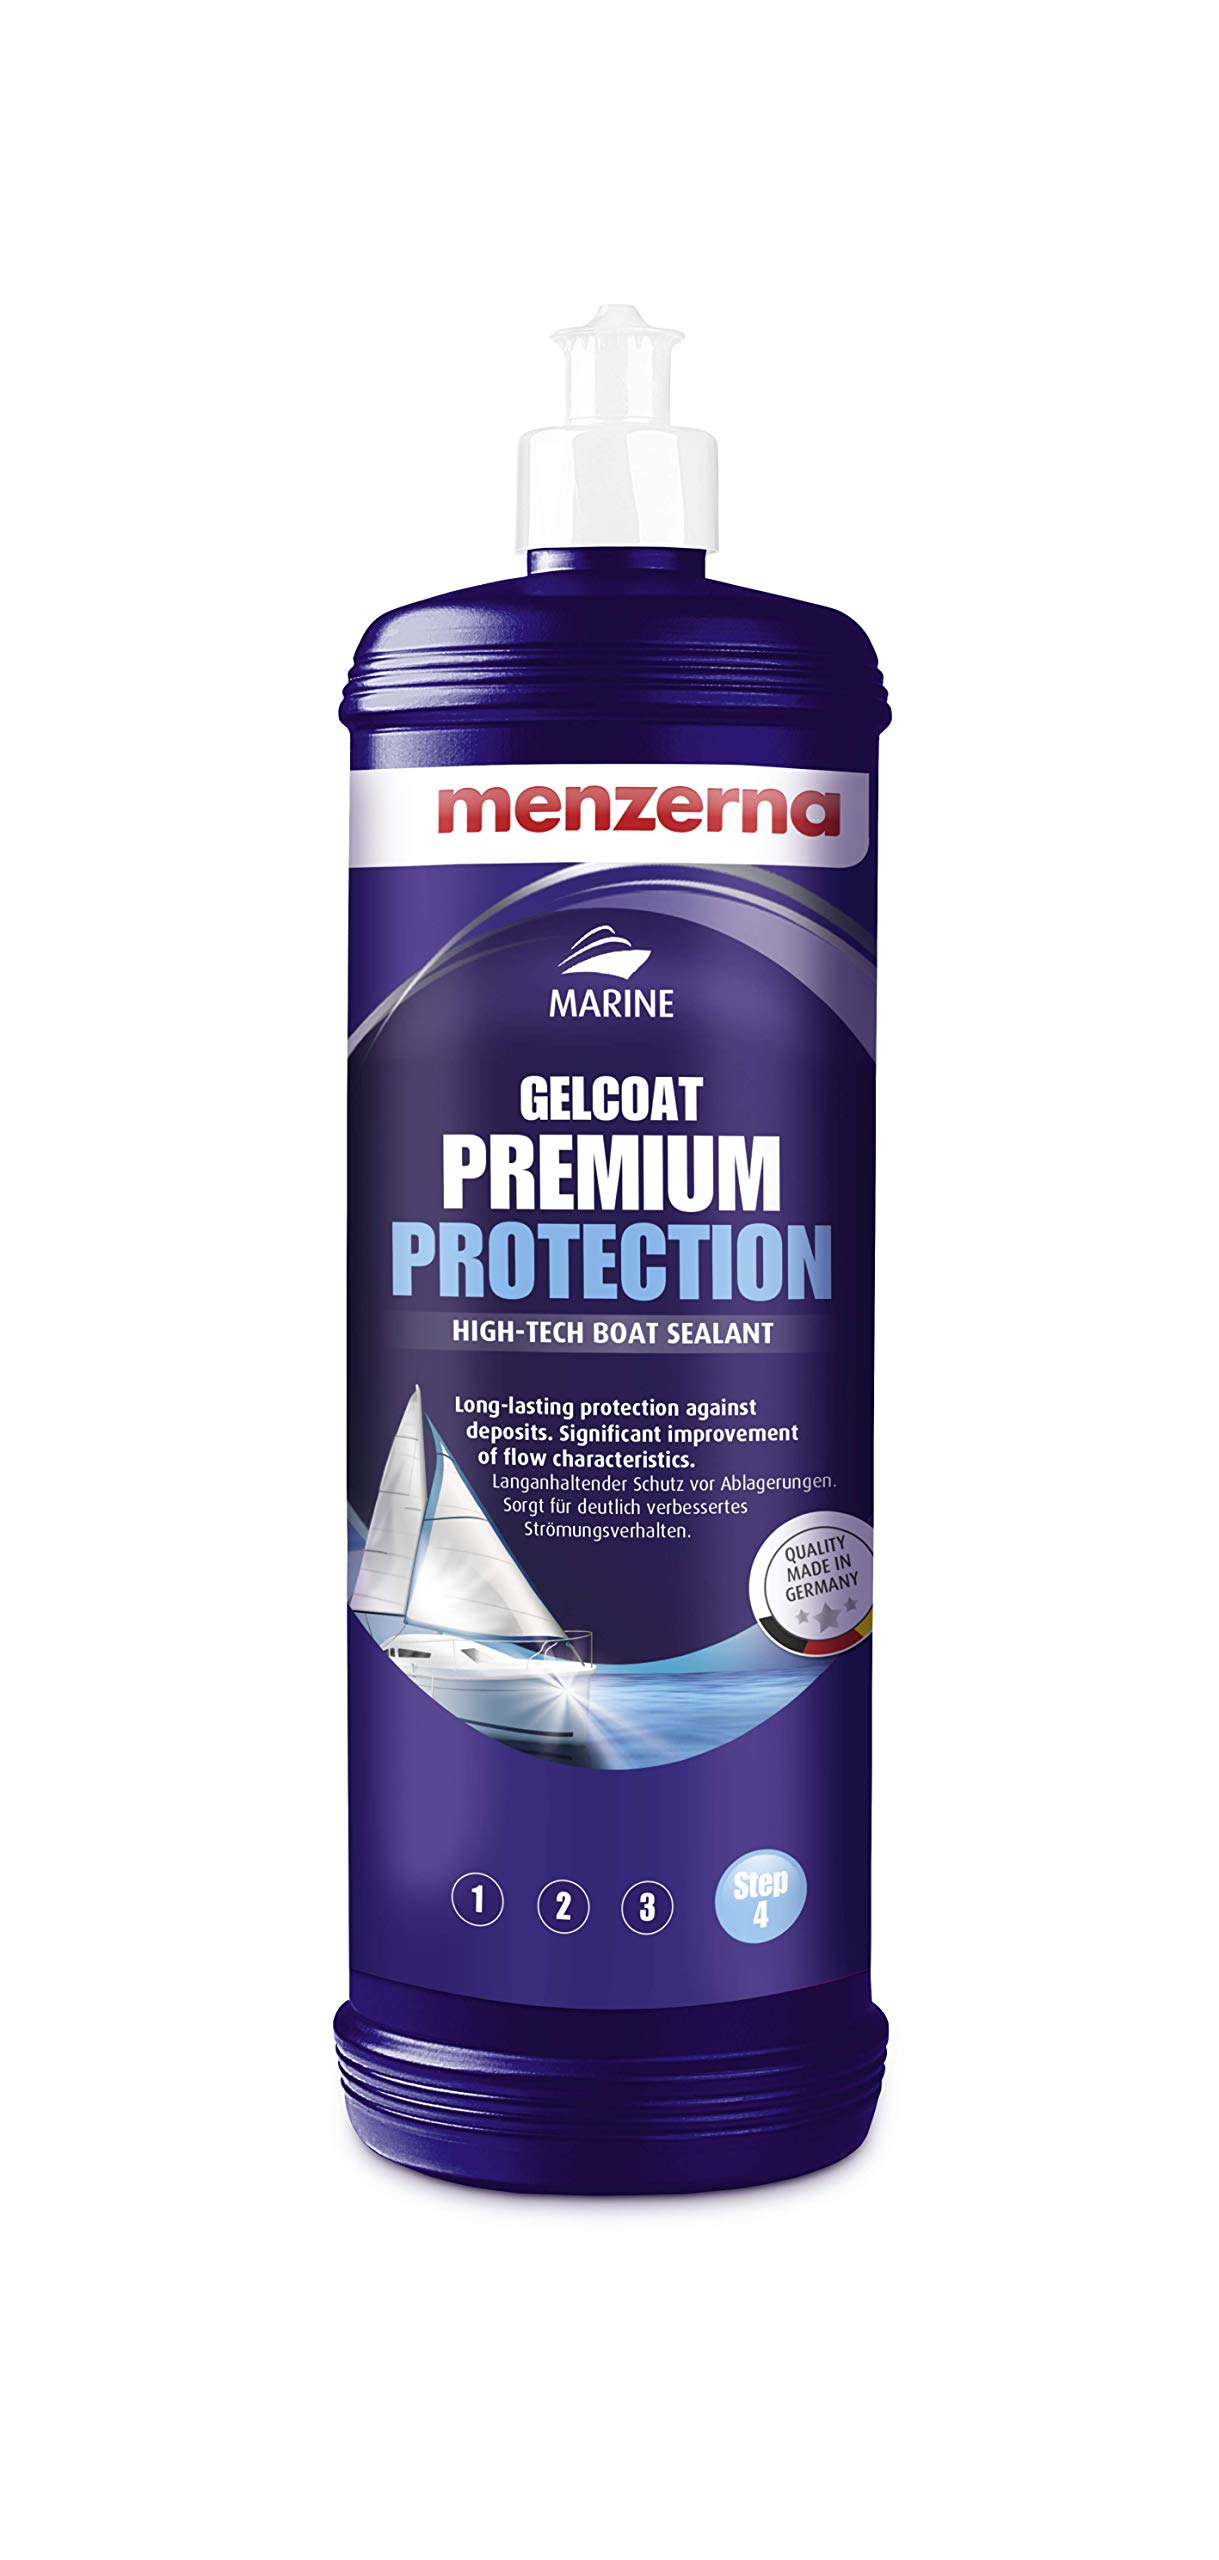 menzerna Marine GELCOAT Premium Protection Bootspflege 1 Liter von menzerna